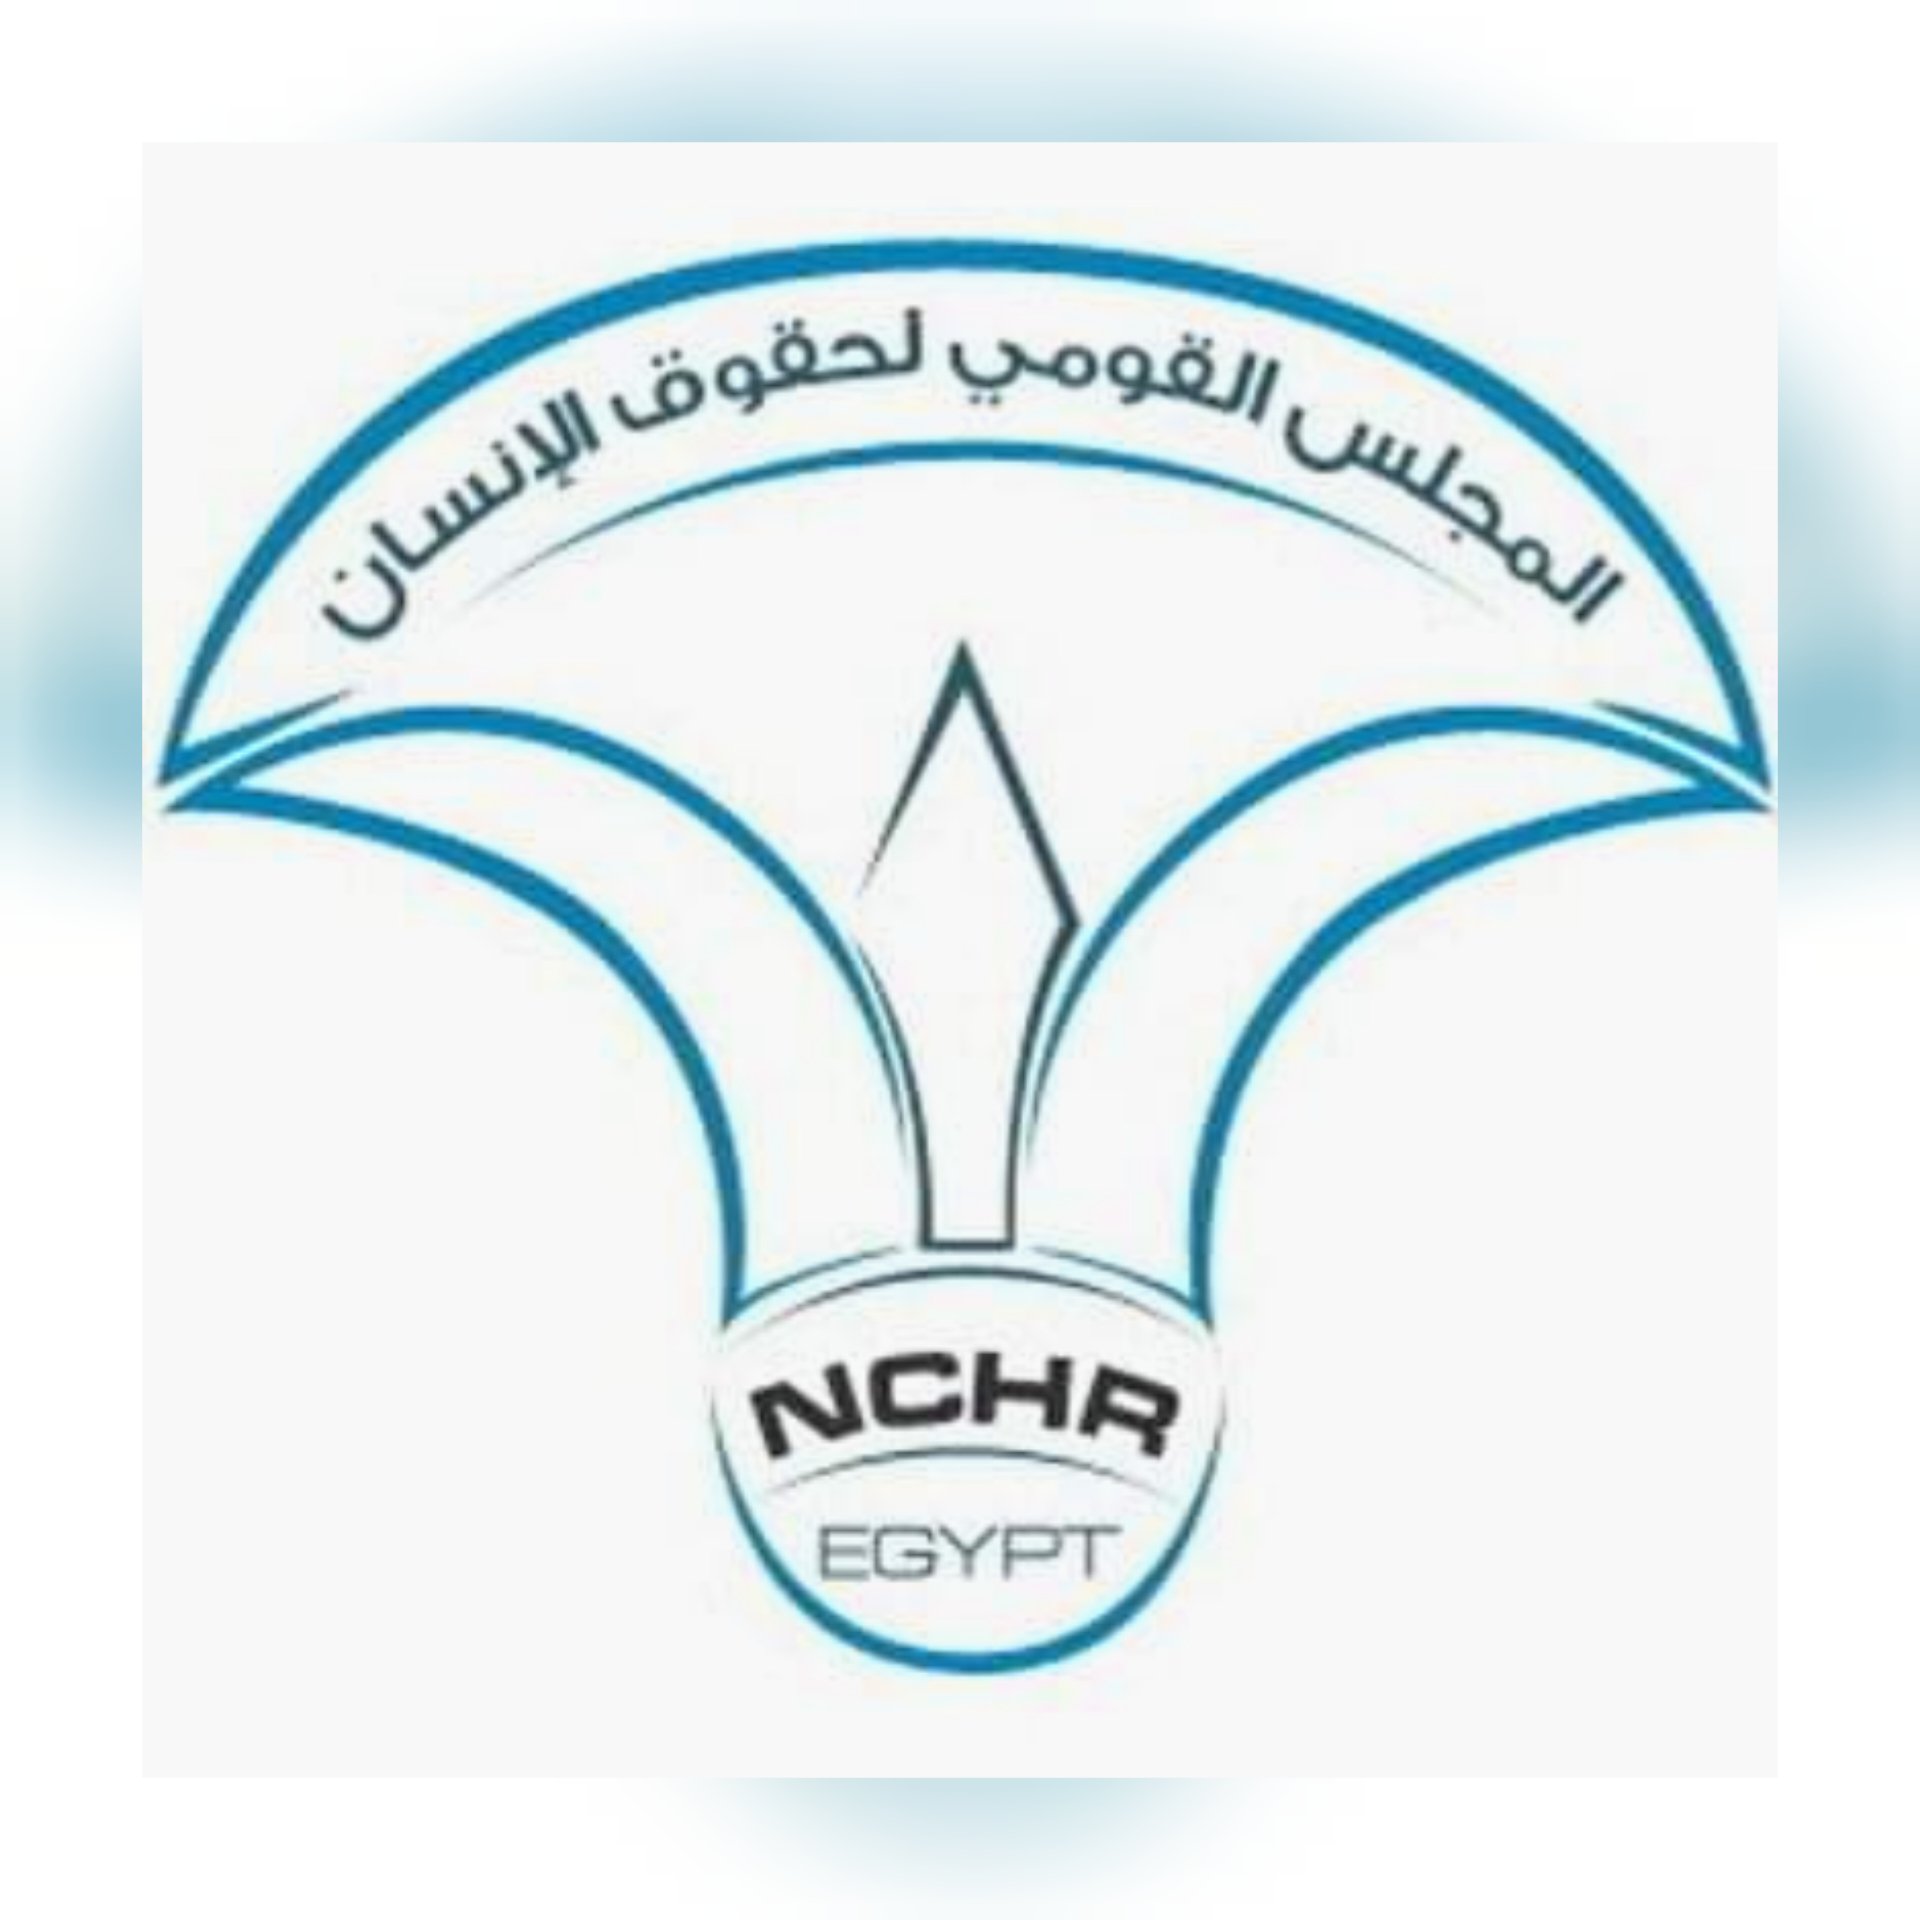  NCHR Receives European Union Delegation to Egypt 